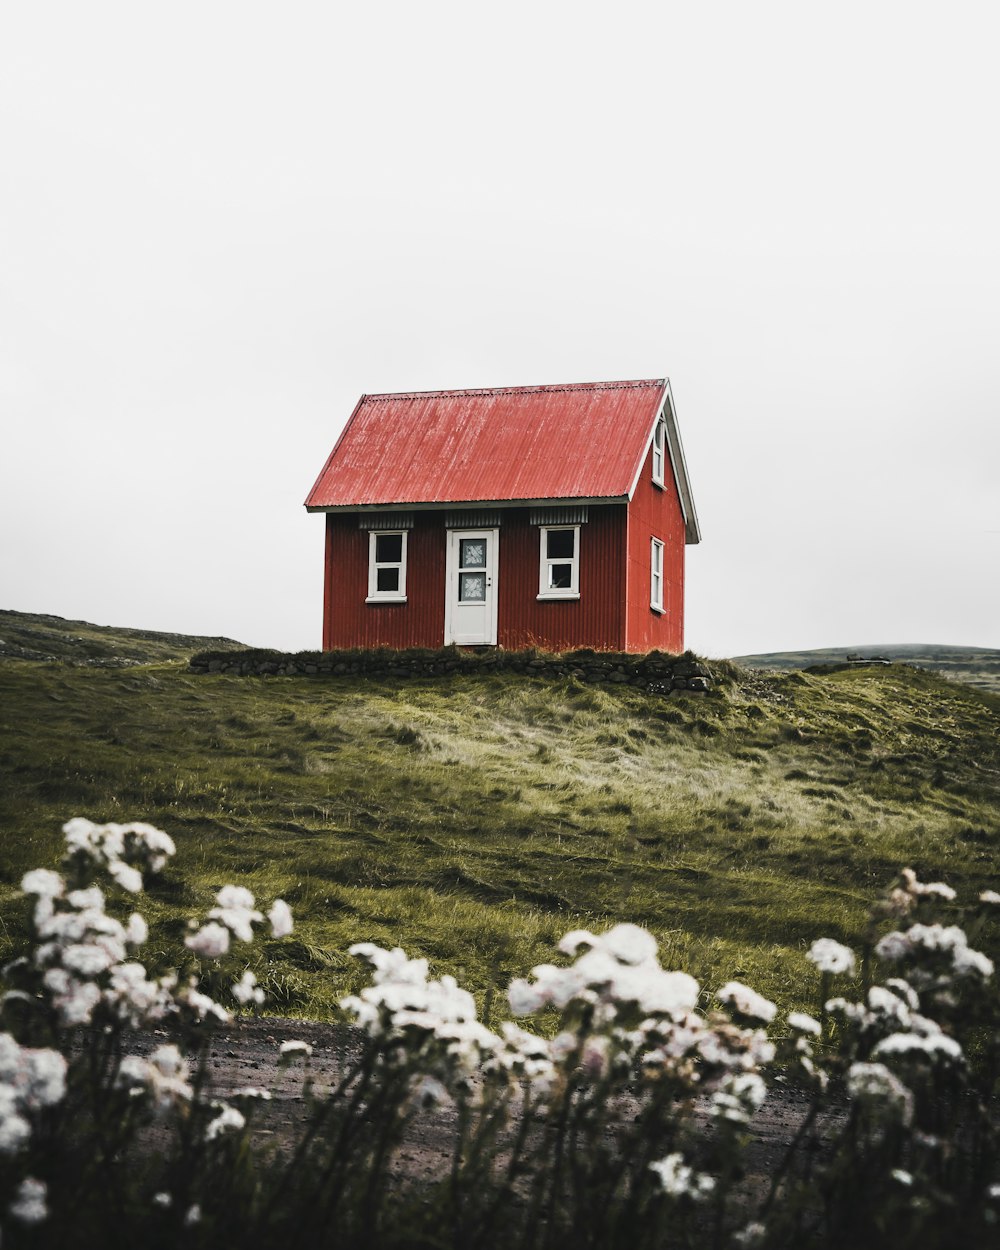 붉은 집과 흰 집이 푸른 잔디밭을 둘러싸고 있습니다.